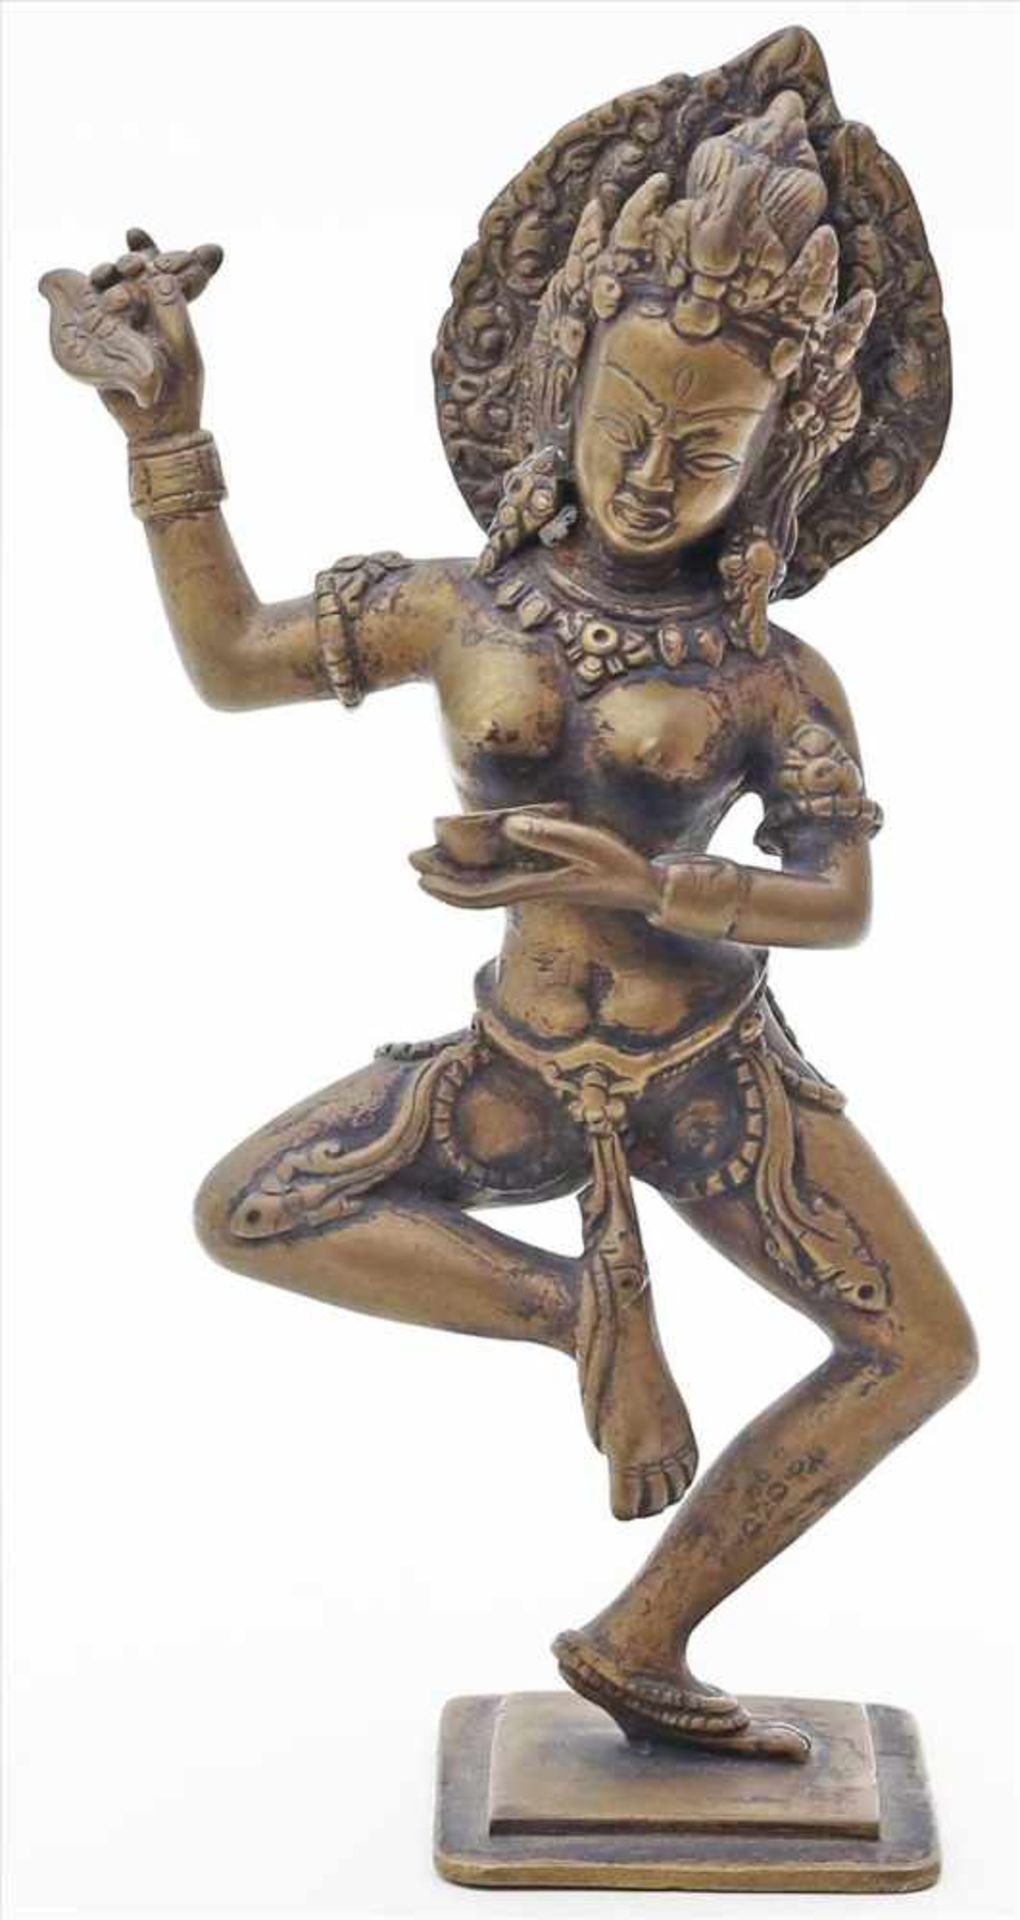 Skulptur einer tanzenden, hinduistischen Gottheit.Schwere Bronze. Wohl Nepal. H. 25 cm.